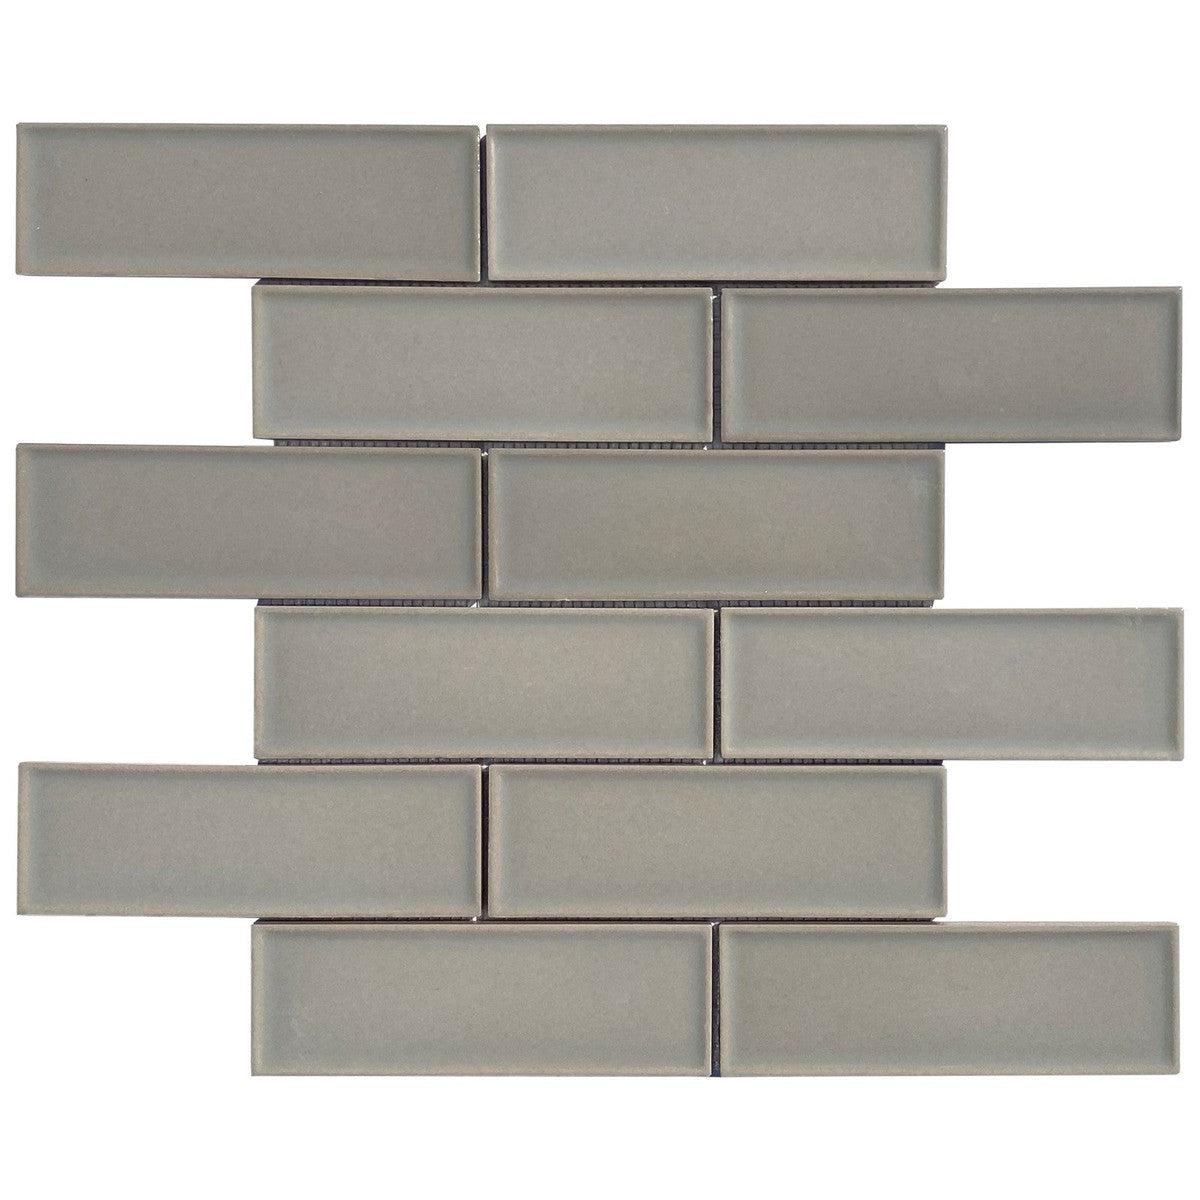 2x6 Dimension Pale Gray Brick Porcelain Mosaic Tile